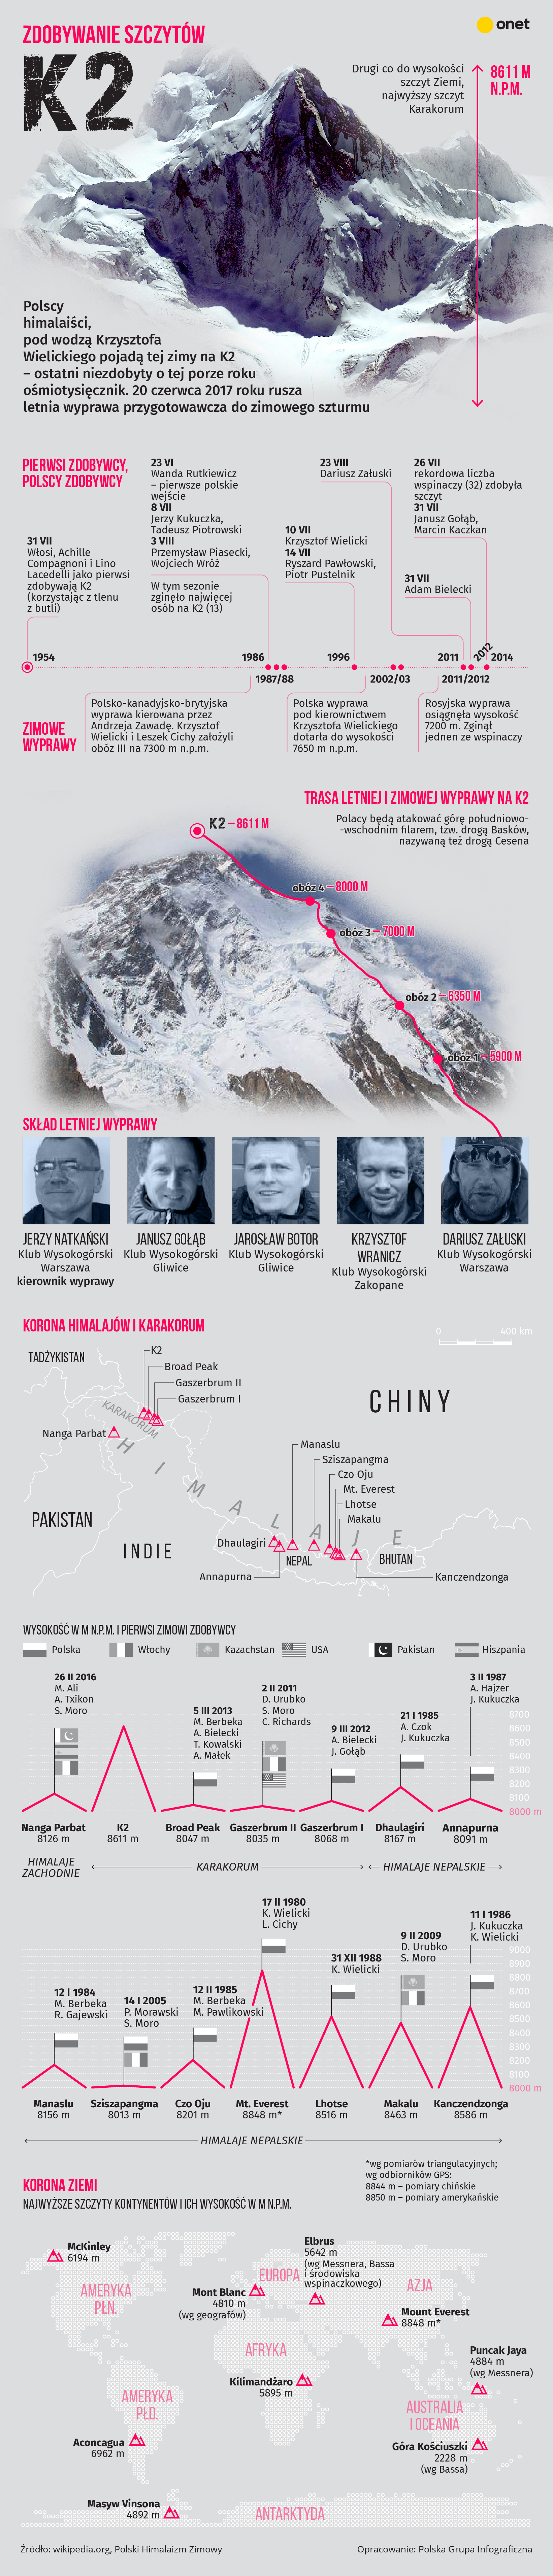 Zimowa próba zdobycia K2